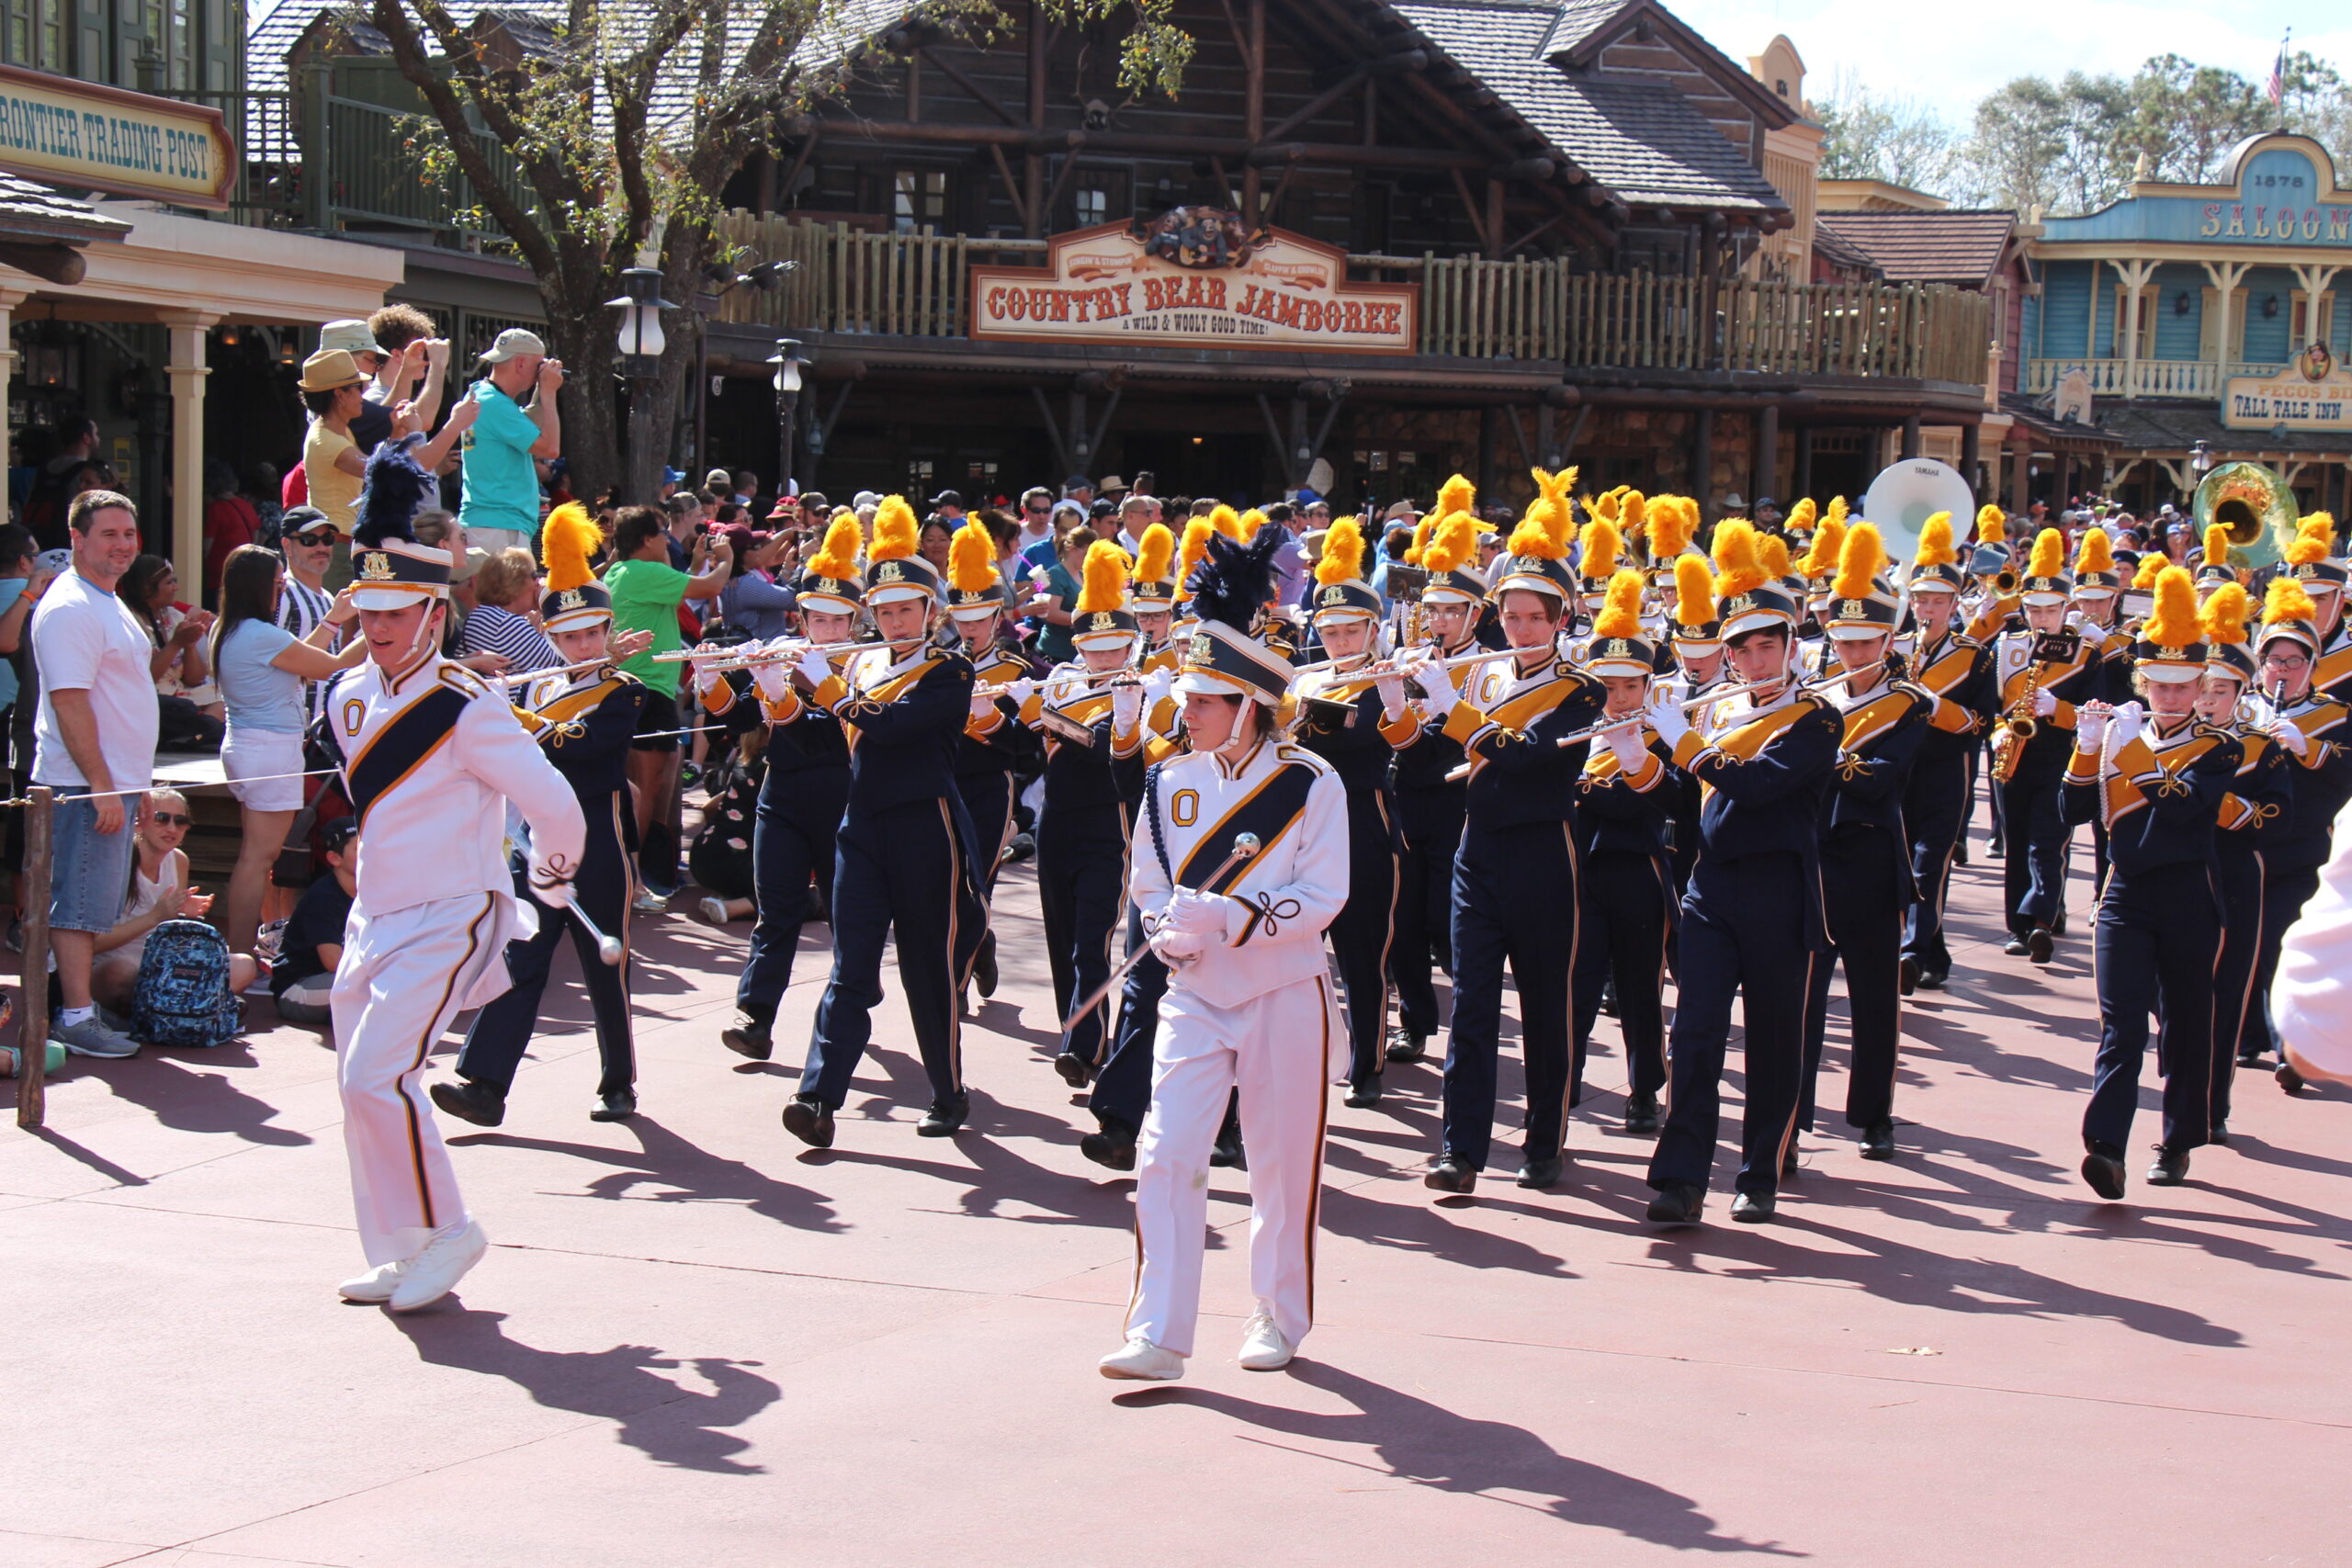 Marching band performing at Disney